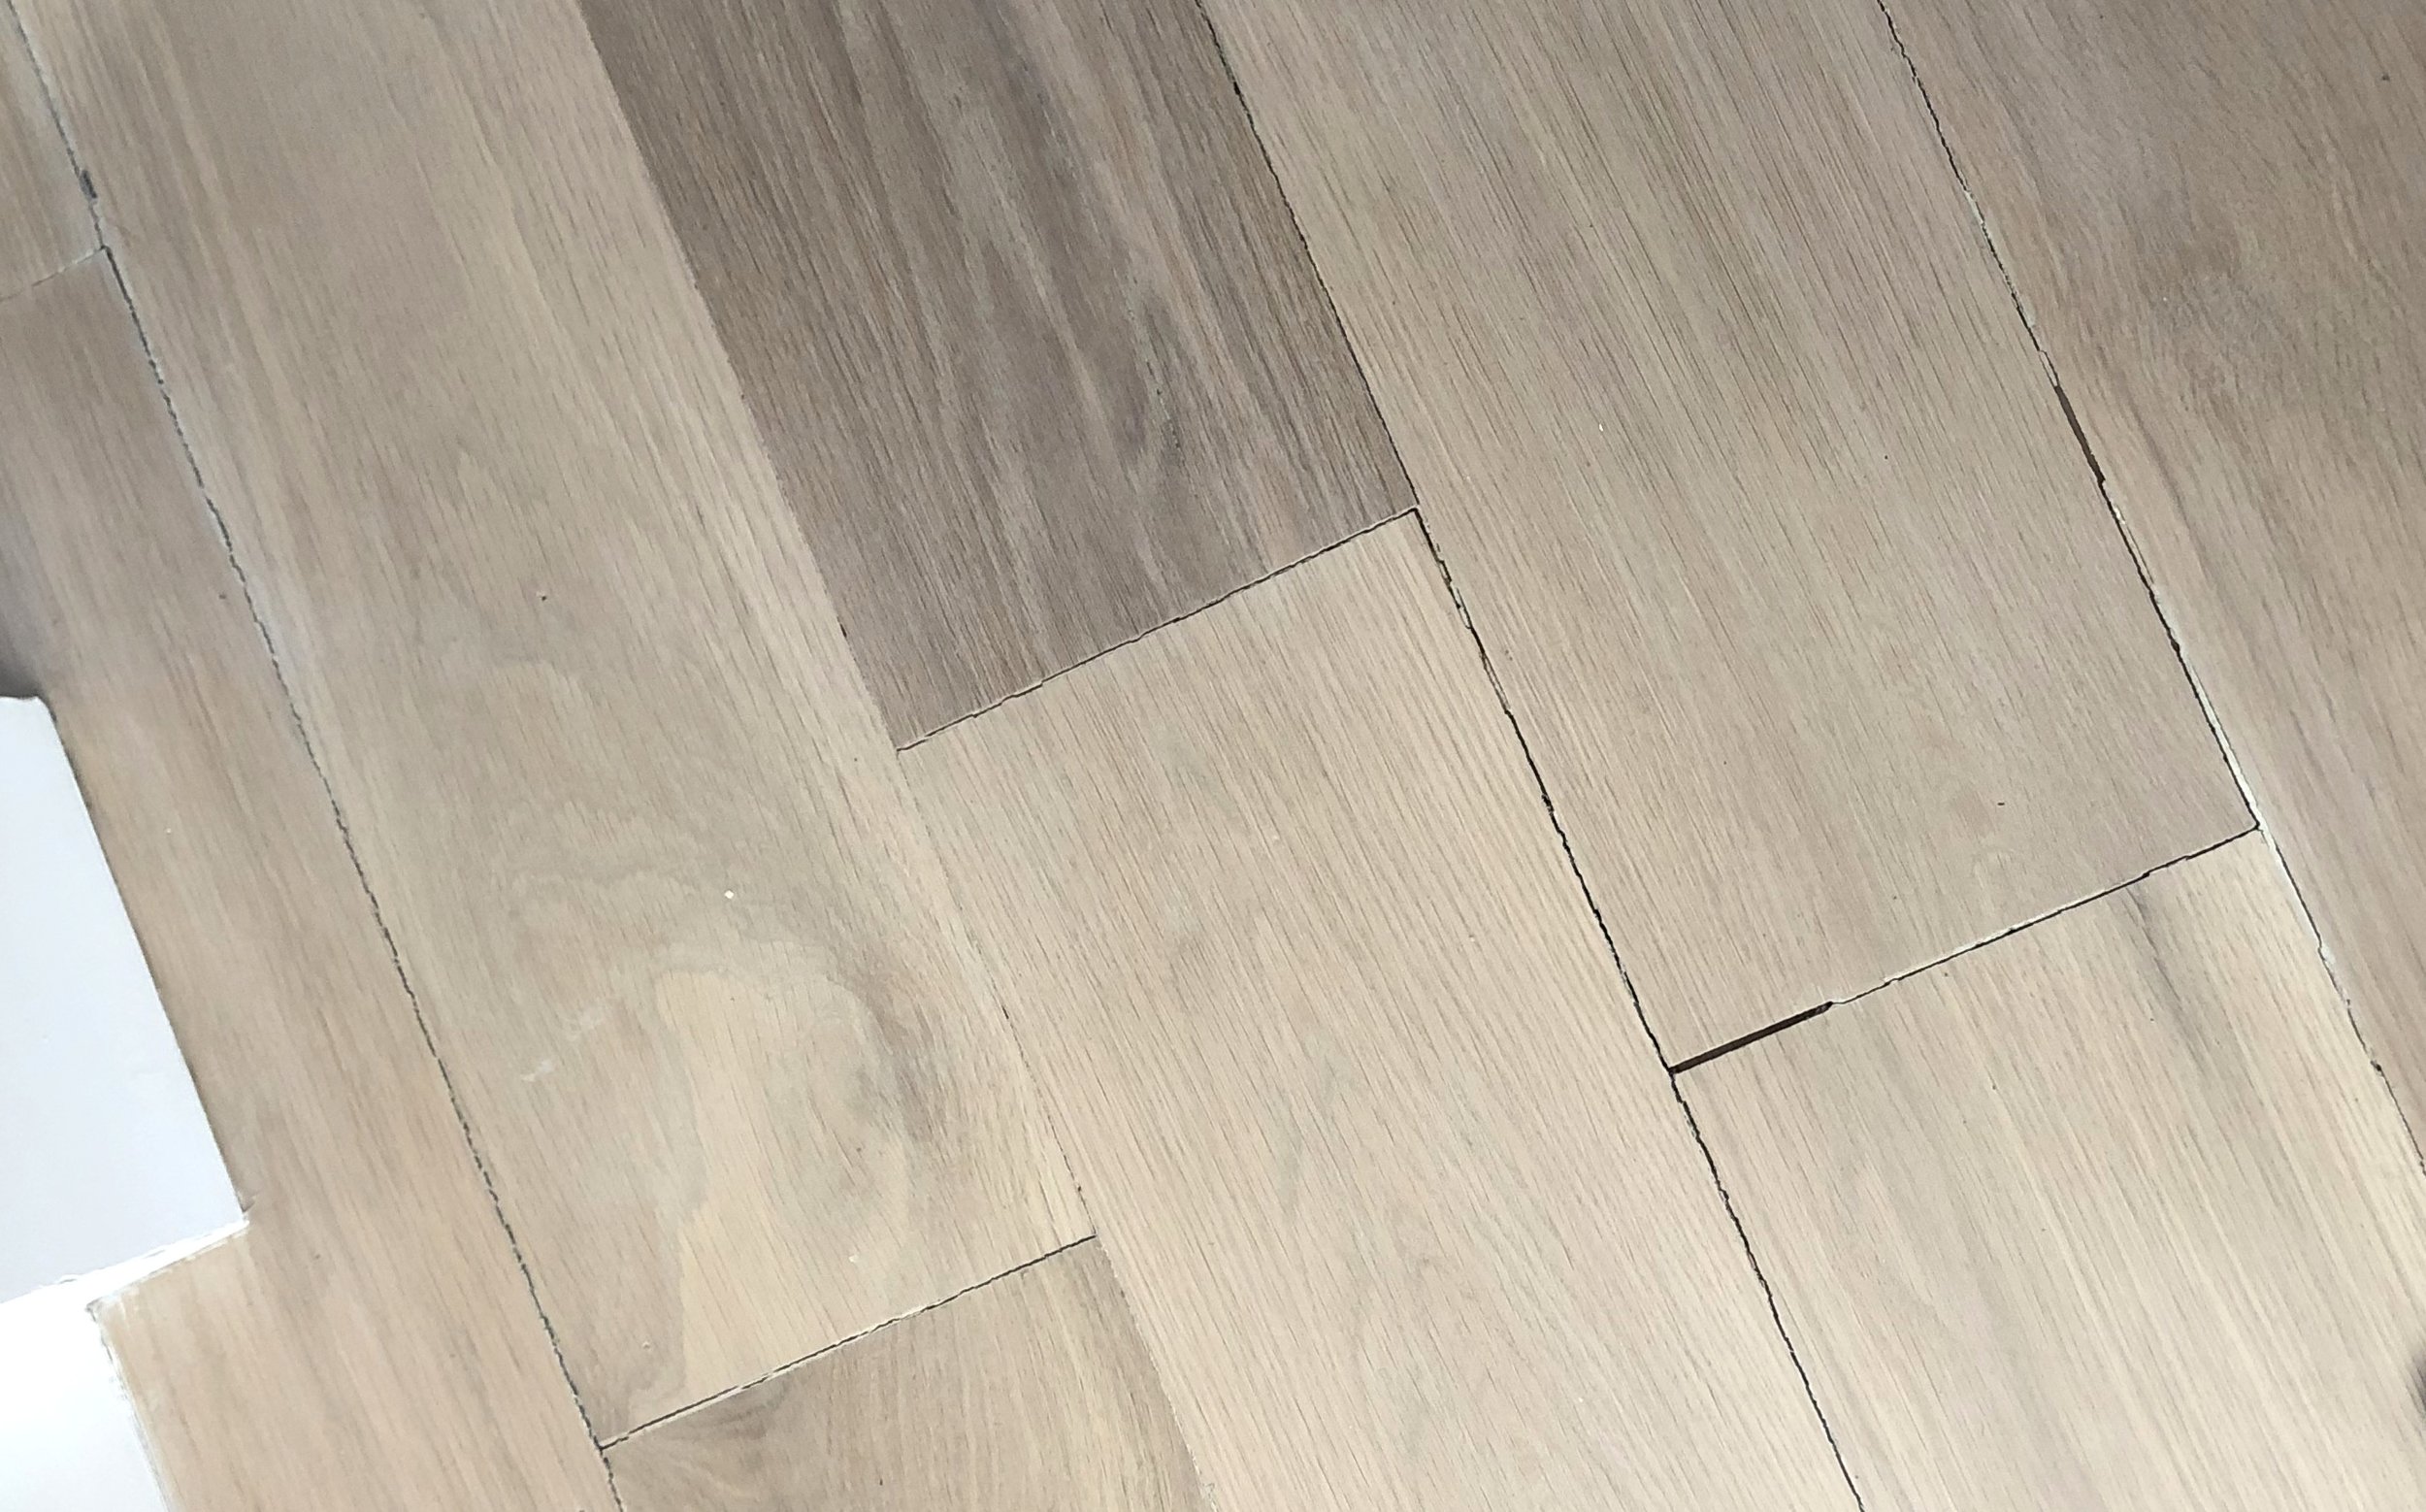 Eek My Hardwood Floor Has Gaps, What Causes Gaps In Hardwood Floors